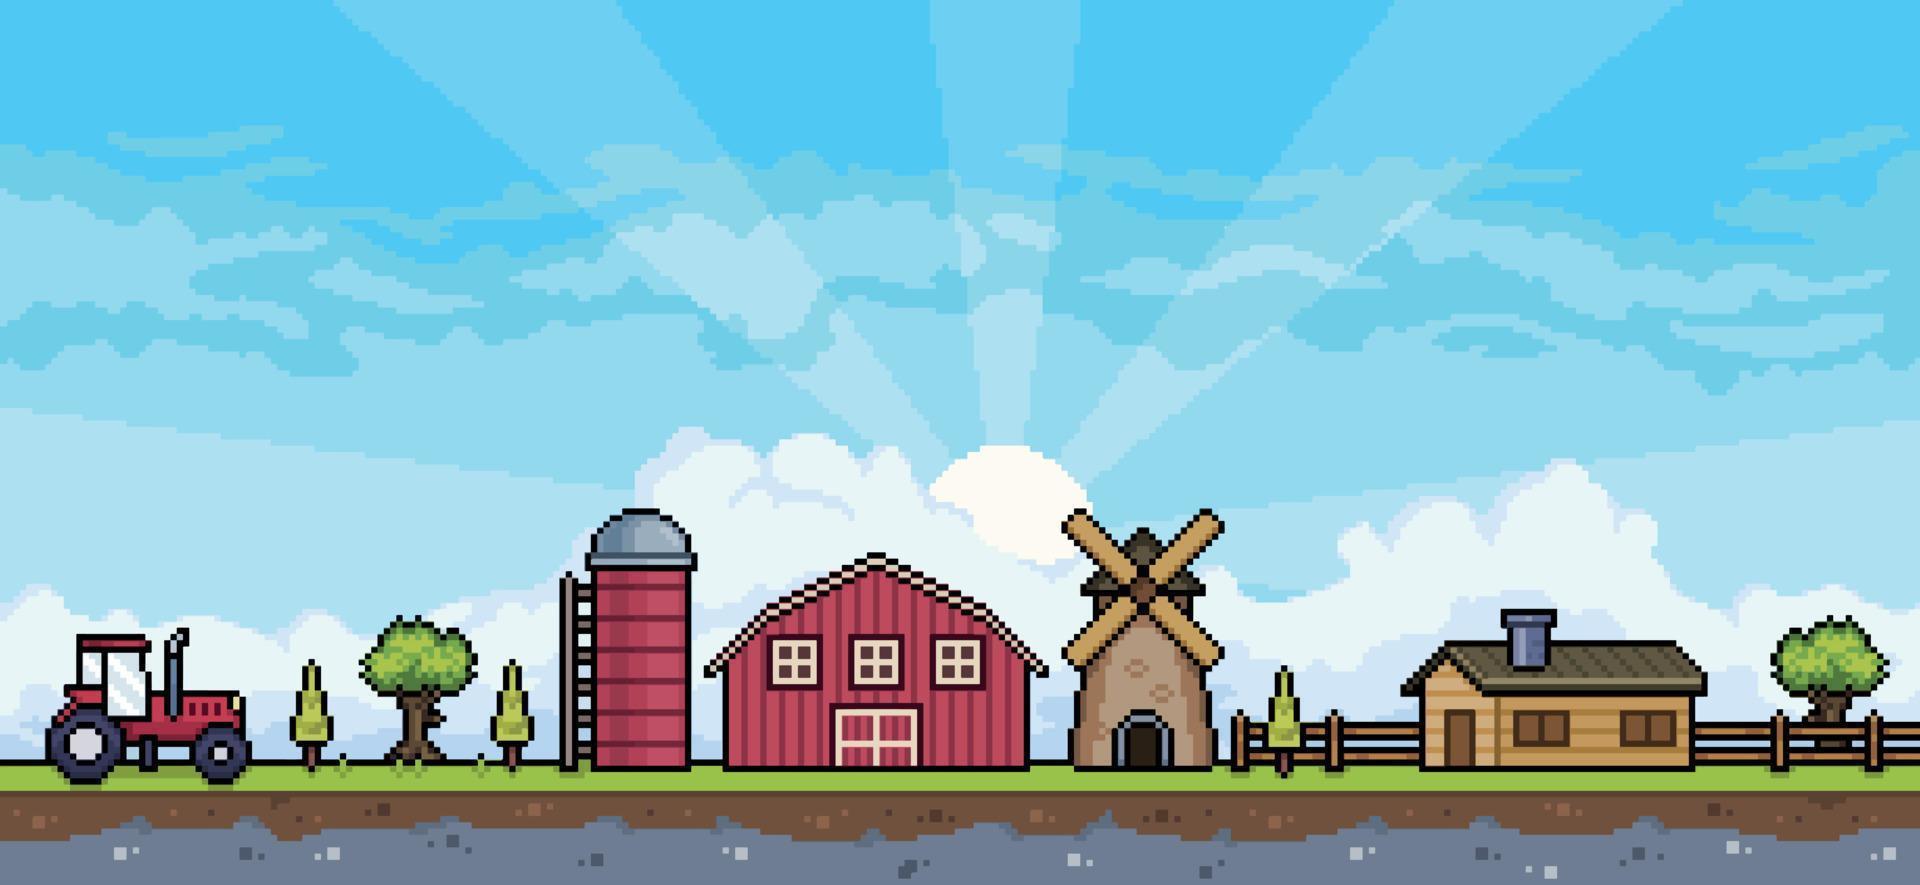 escena de la granja de pixel art con tractor, granero, silo, molino, casa. fondo de paisaje para juego de 8 bits vector